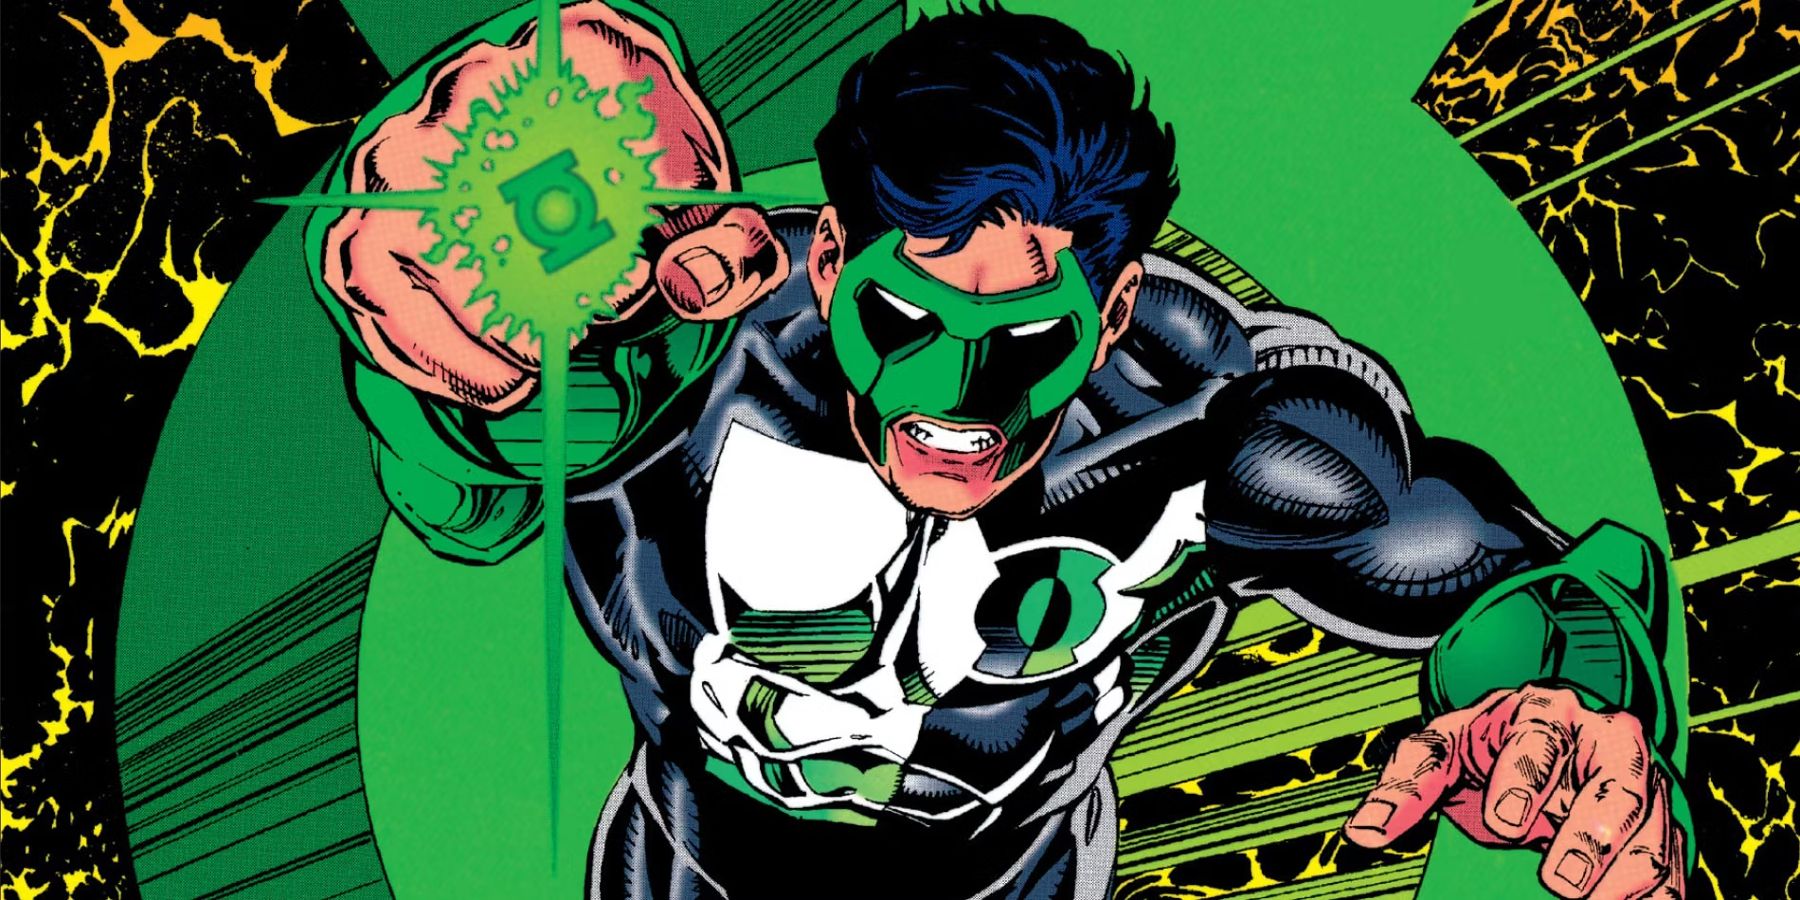 Ilustração da DC Comics de Kyle Rayner como o Lanterna Verde, entrando em ação